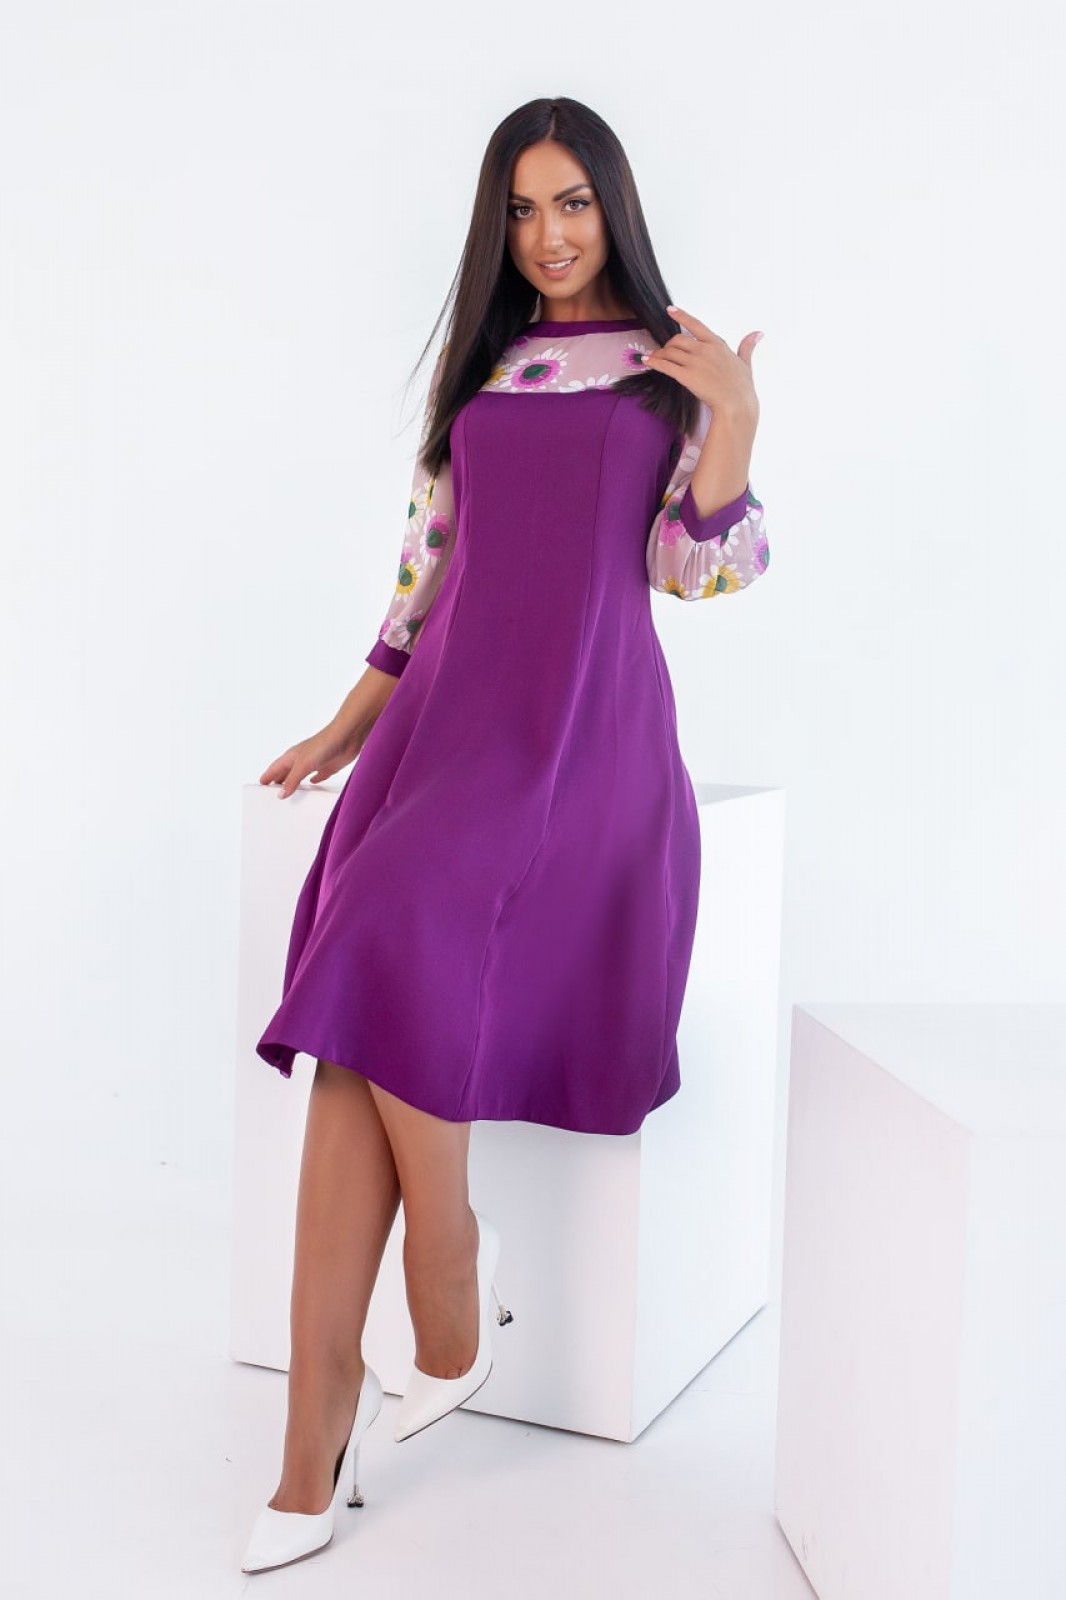 Жіноча сукня зі вставками із принтованого шифону фіолетова р.44/46 381712